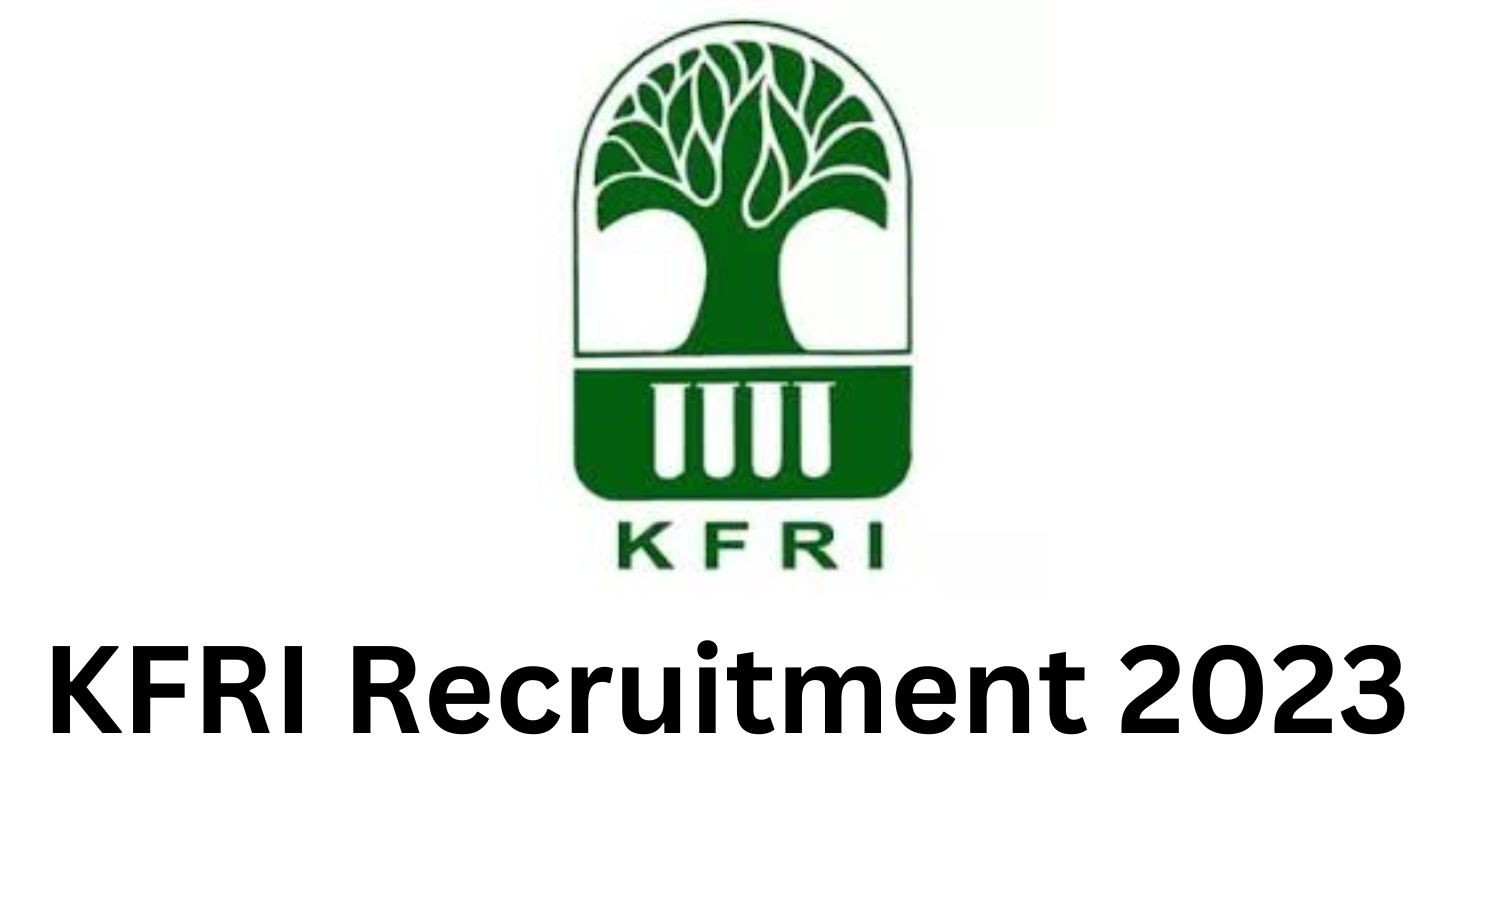 KFRI Recruitment 2023